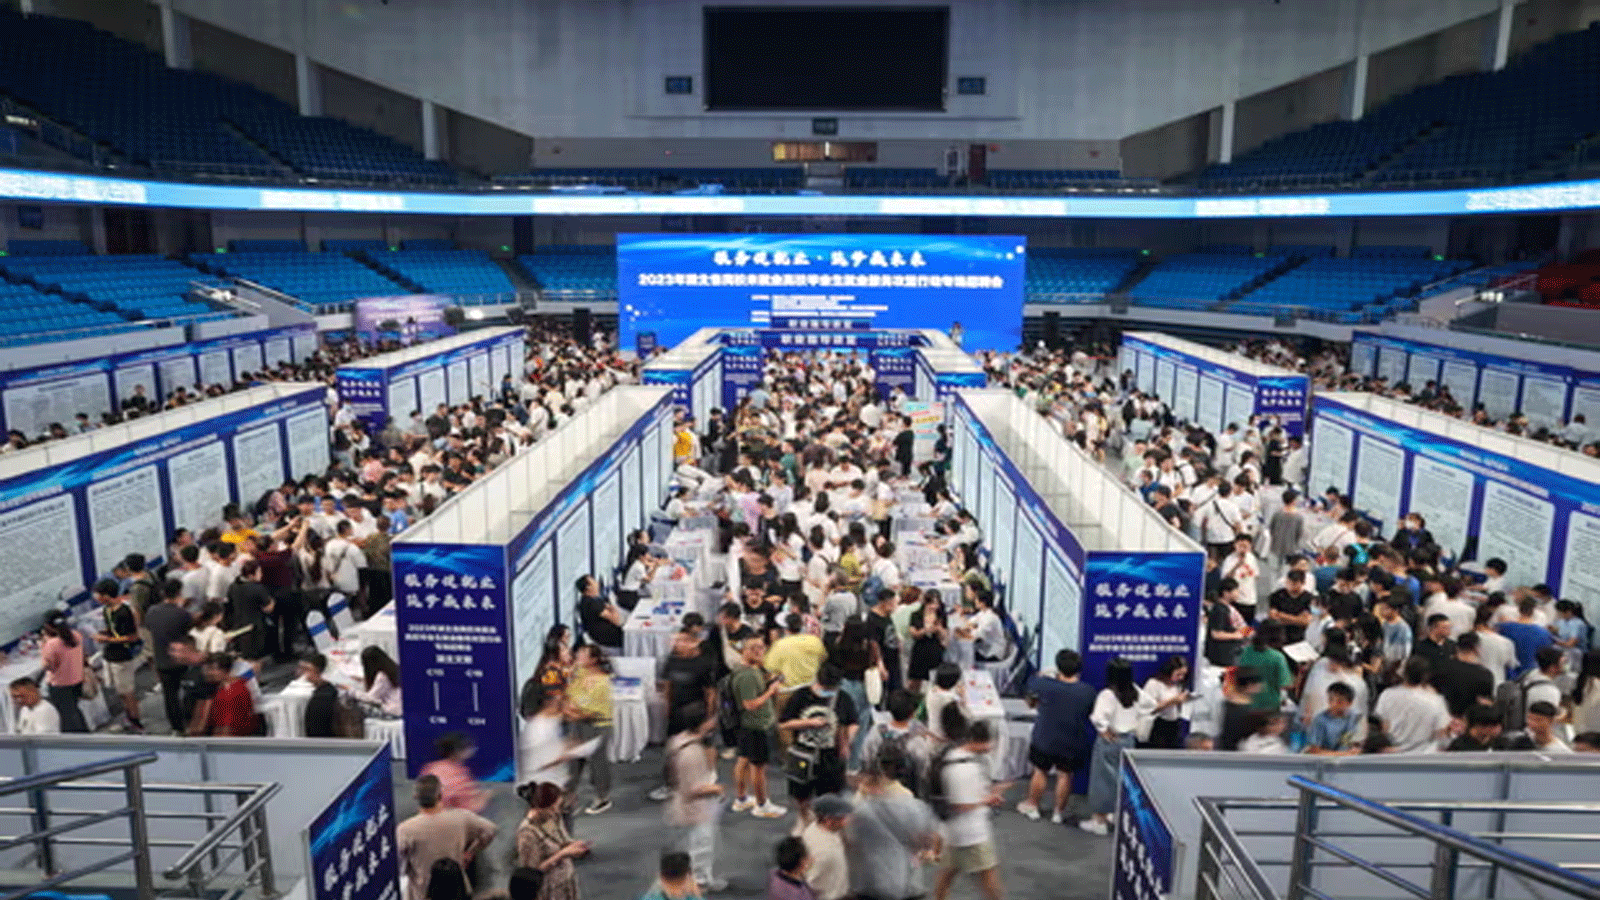 خريجو الجامعات يحضرون معرض الوظائف في ووهان، الصين، الأسبوع الماضي